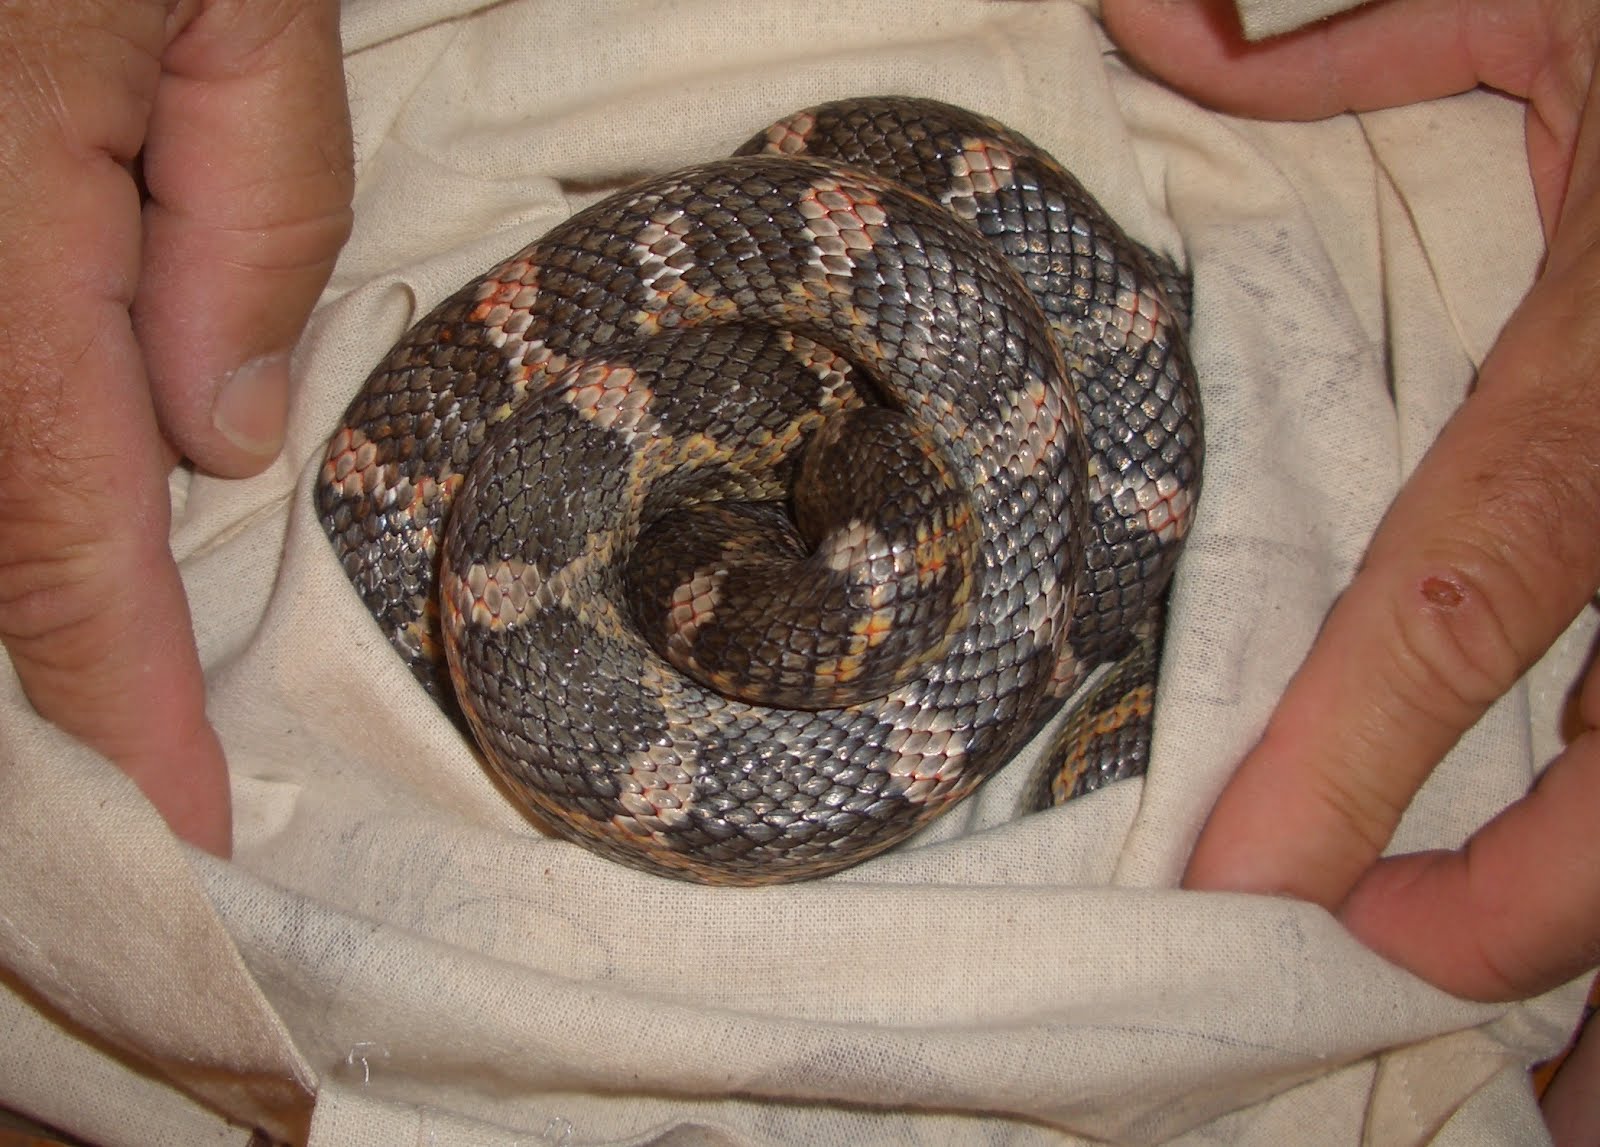 SEE TRAIL: Texas Rat Snake dilemma1600 x 1147